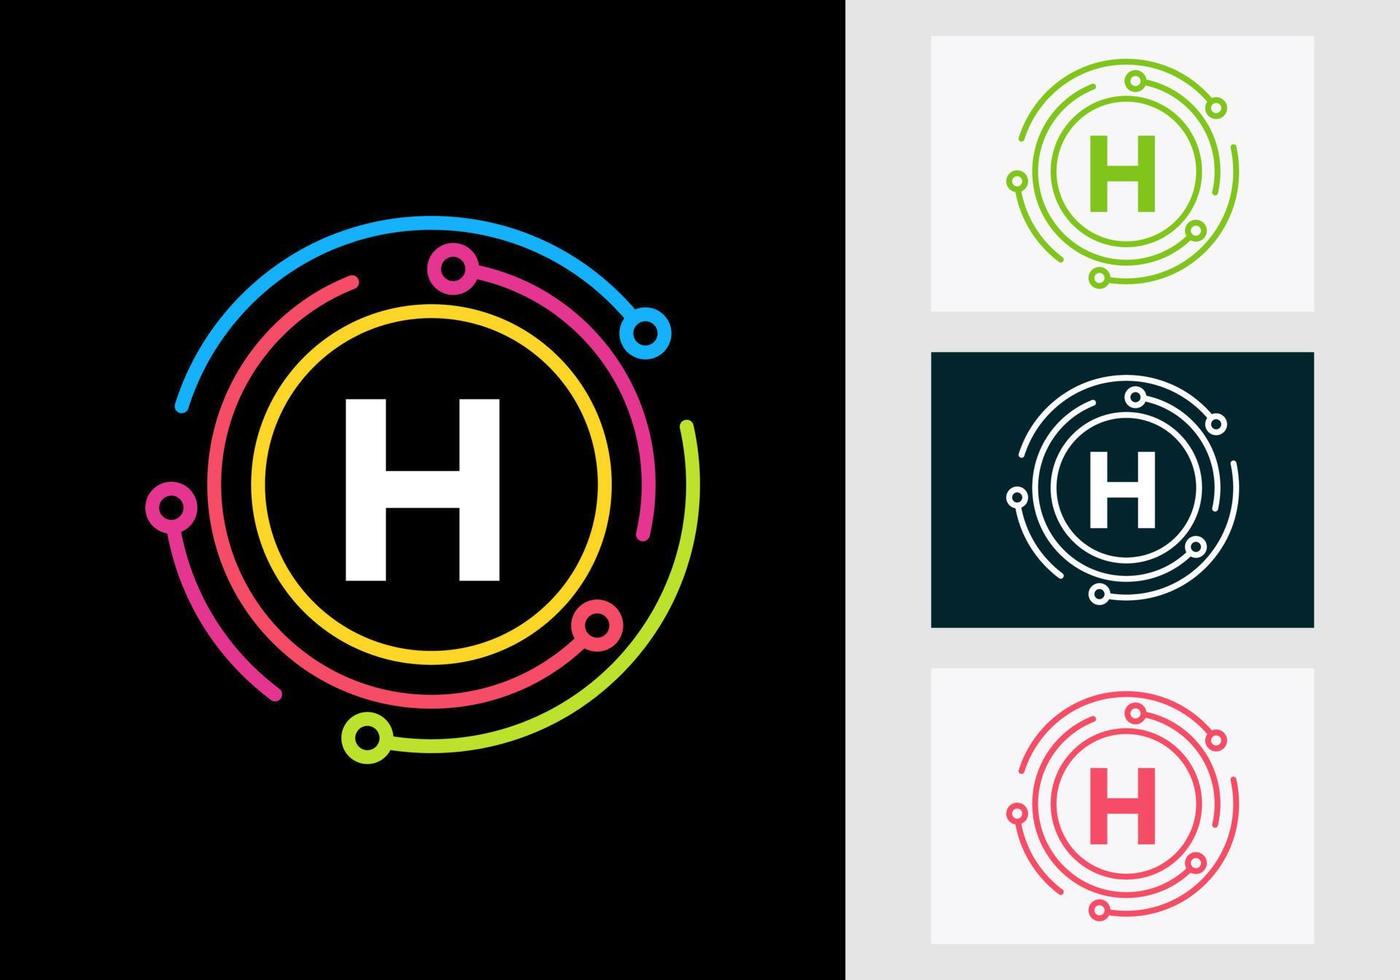 Buchstabe h-Technologie-Logo-Design. Netzwerk-Logo-Symbol vektor